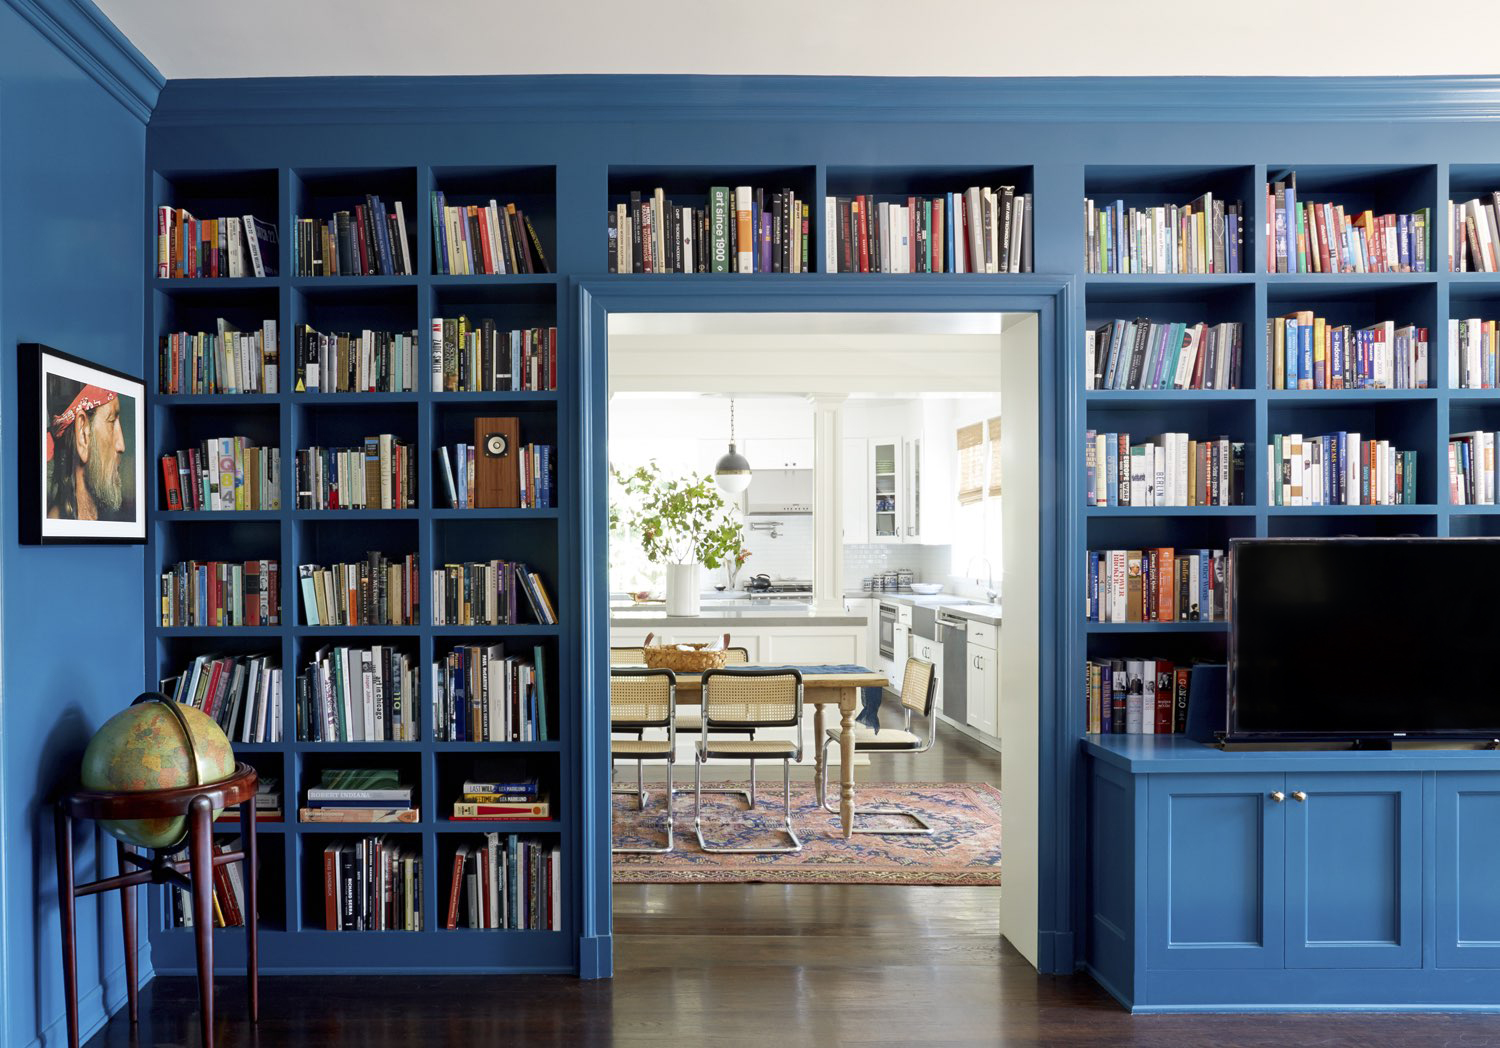 Стеллаж синий. Книжный шкаф во всю стену. Идеи для хранения книг. Книжные полки голубые. Книжные стеллажи синего цвета.